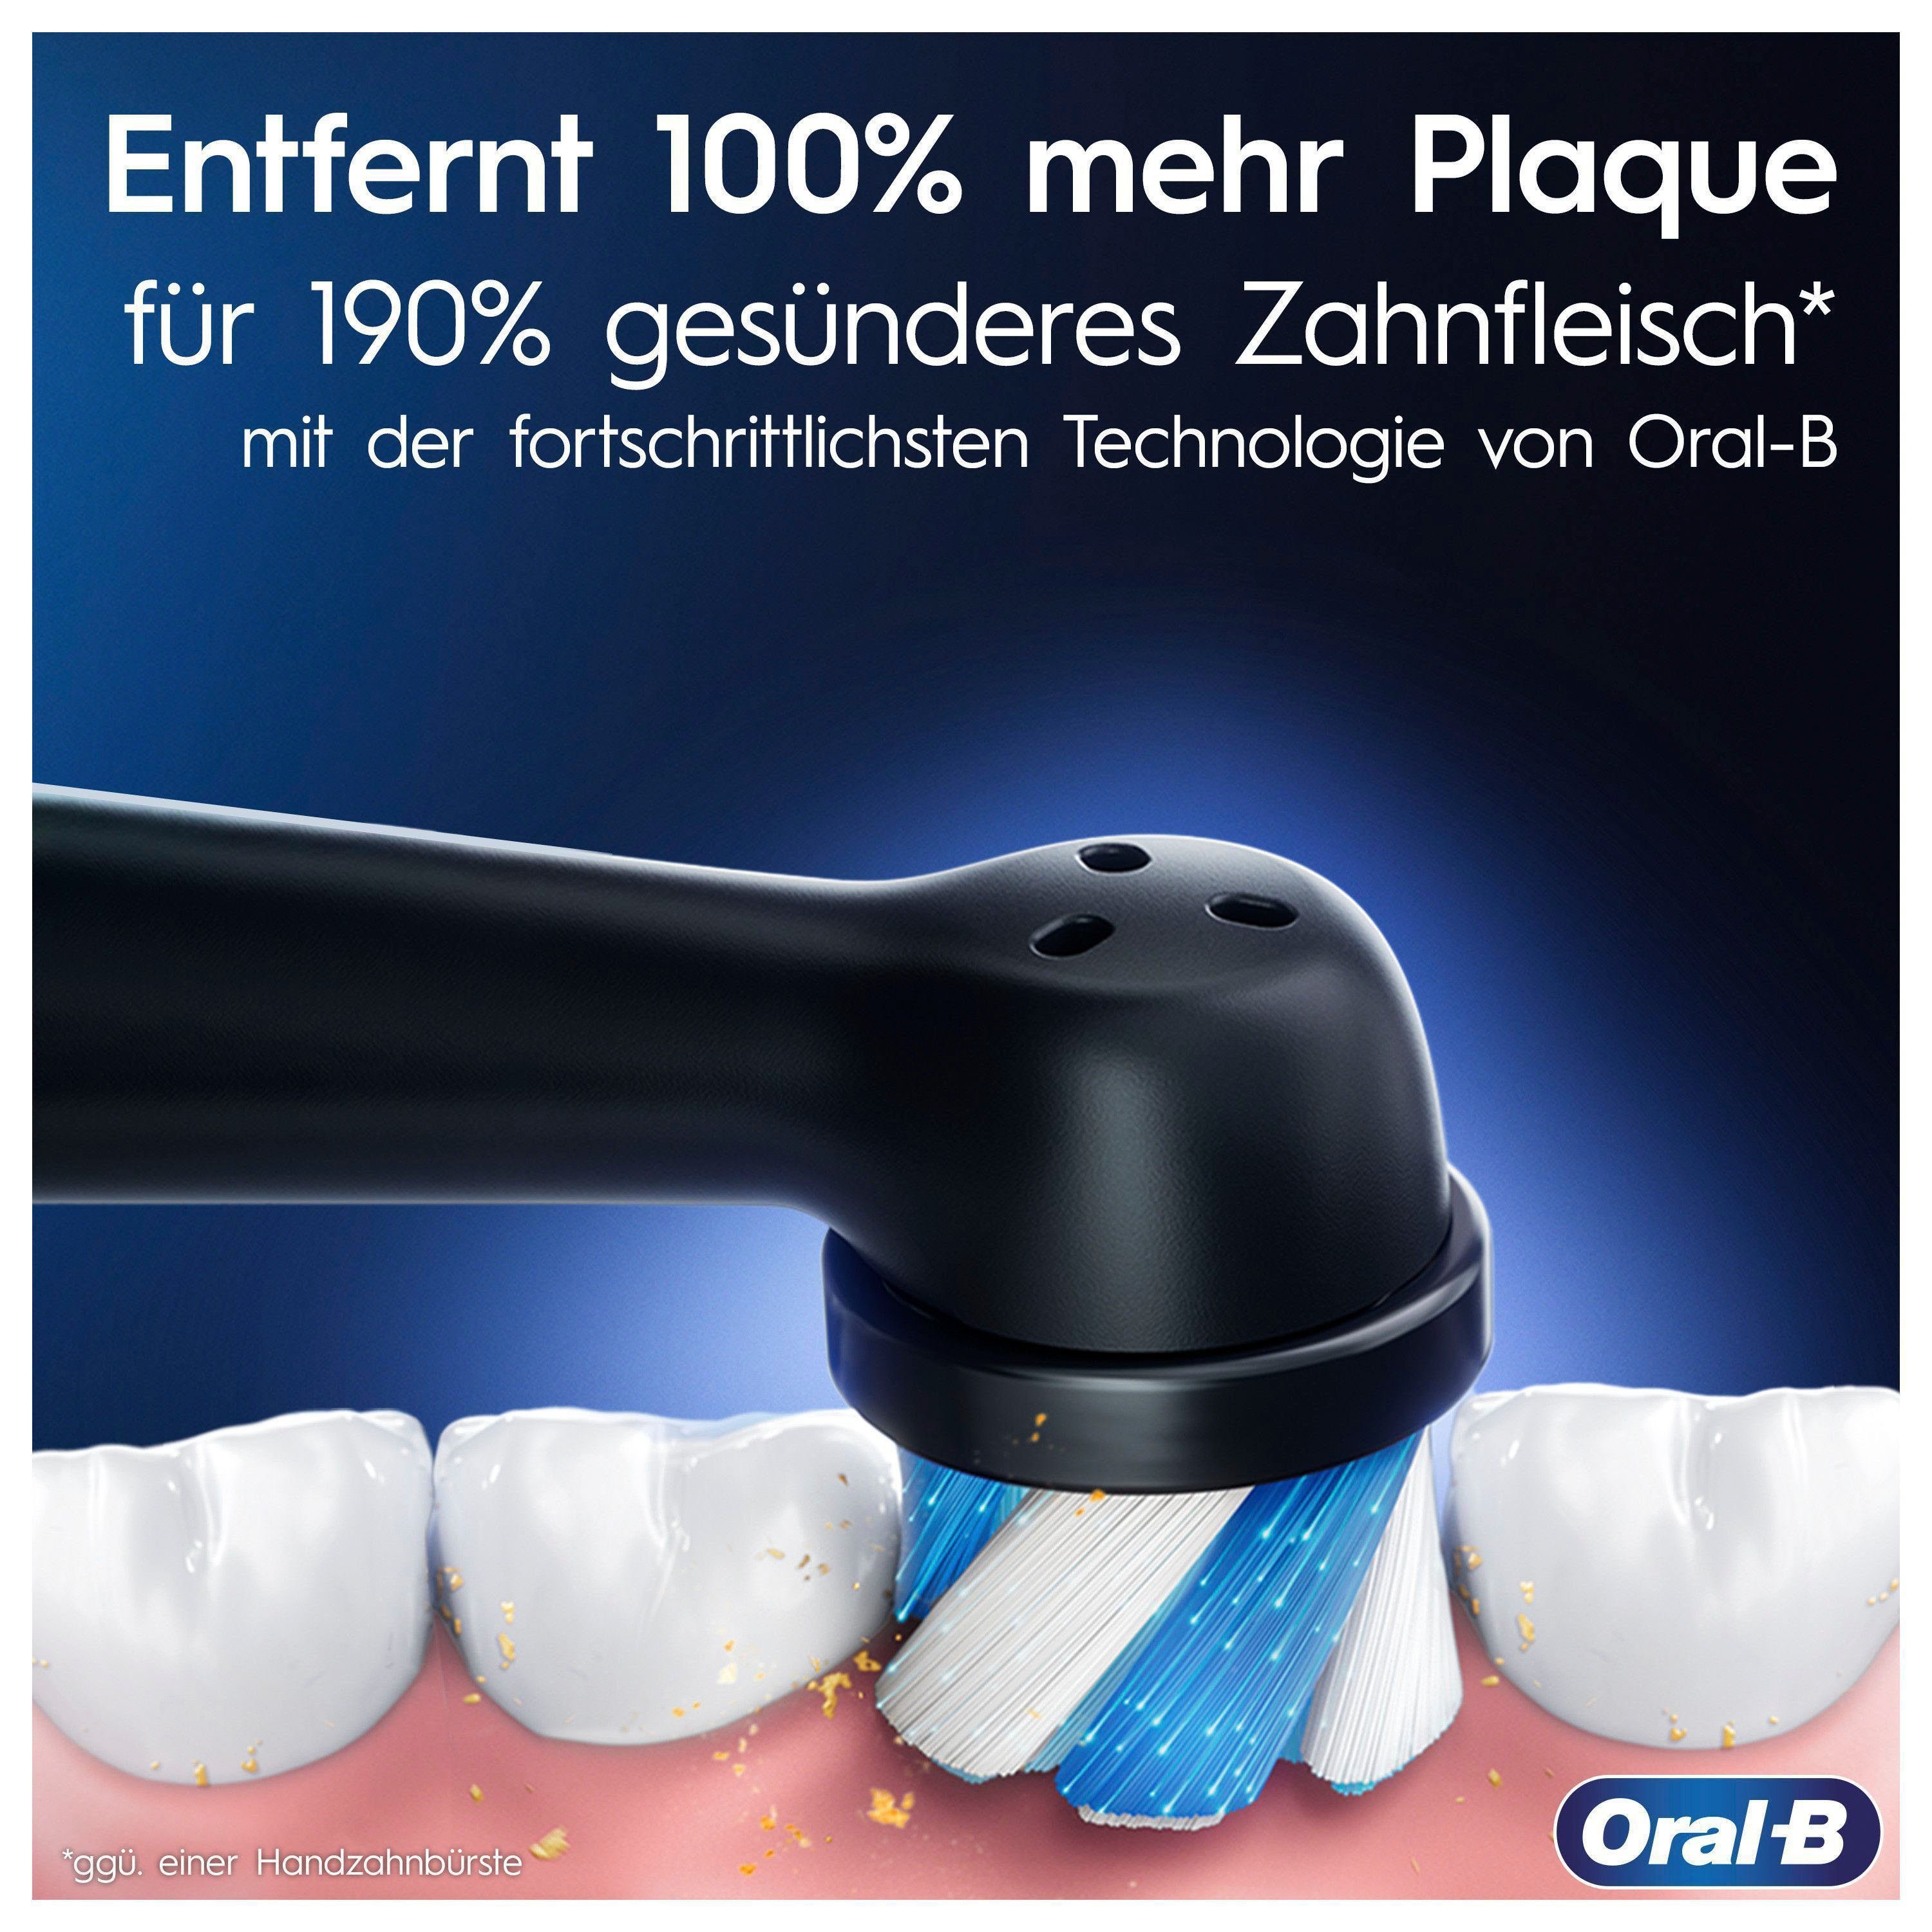 Oral-B Elektrische Zahnbürste iO 2 St., Display, Onyx 7, mit Putzmodi, 5 Reiseetui Black Magnet-Technologie, Aufsteckbürsten